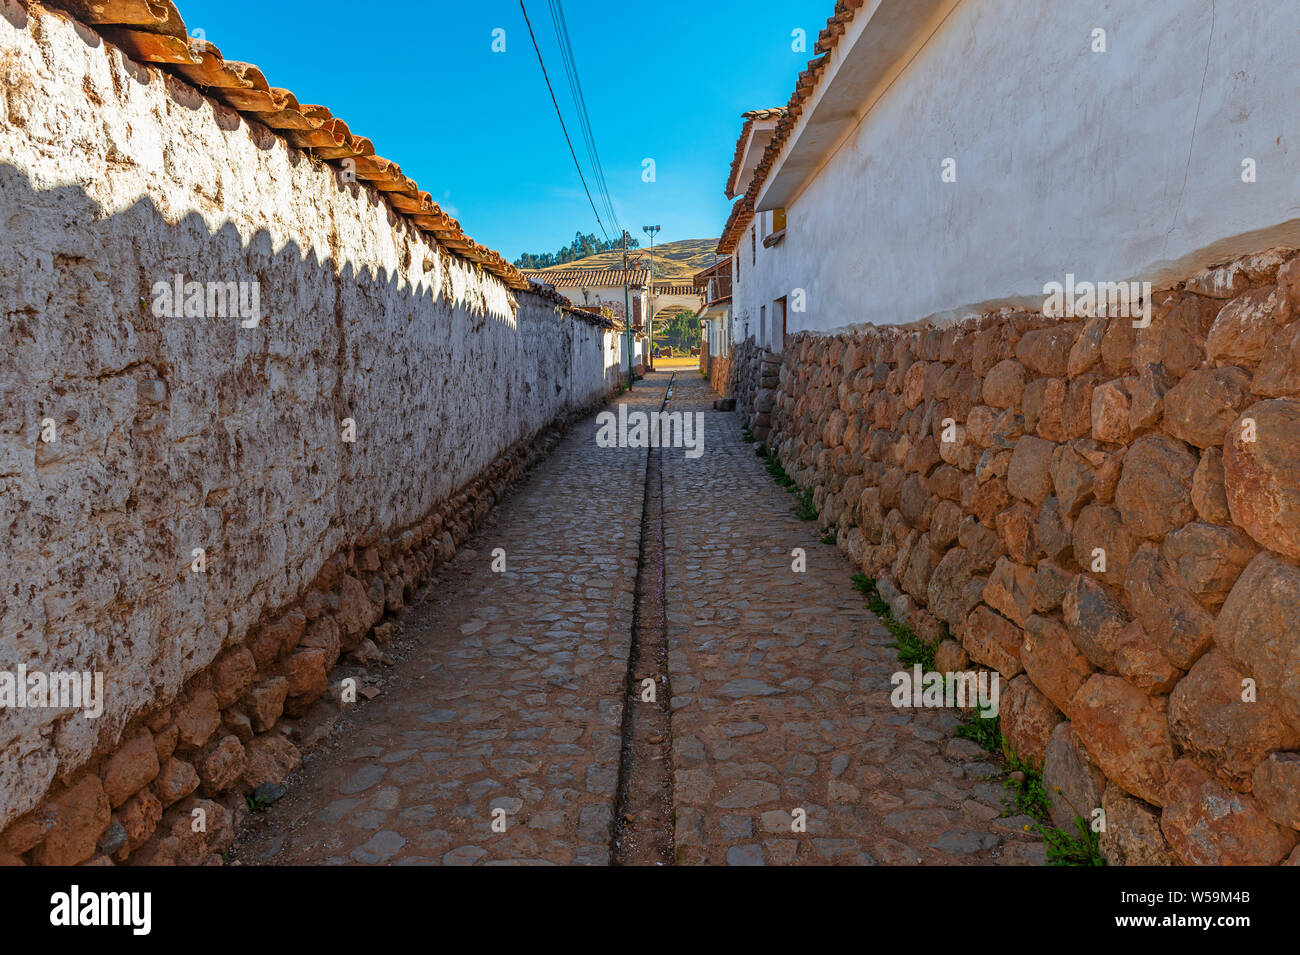 Straße in der Stadt Chinchero am Morgen mit Inca style Wand Architektur, Kopfsteinpflaster und Wasser Kanal, Cusco Region, Peru. Stockfoto